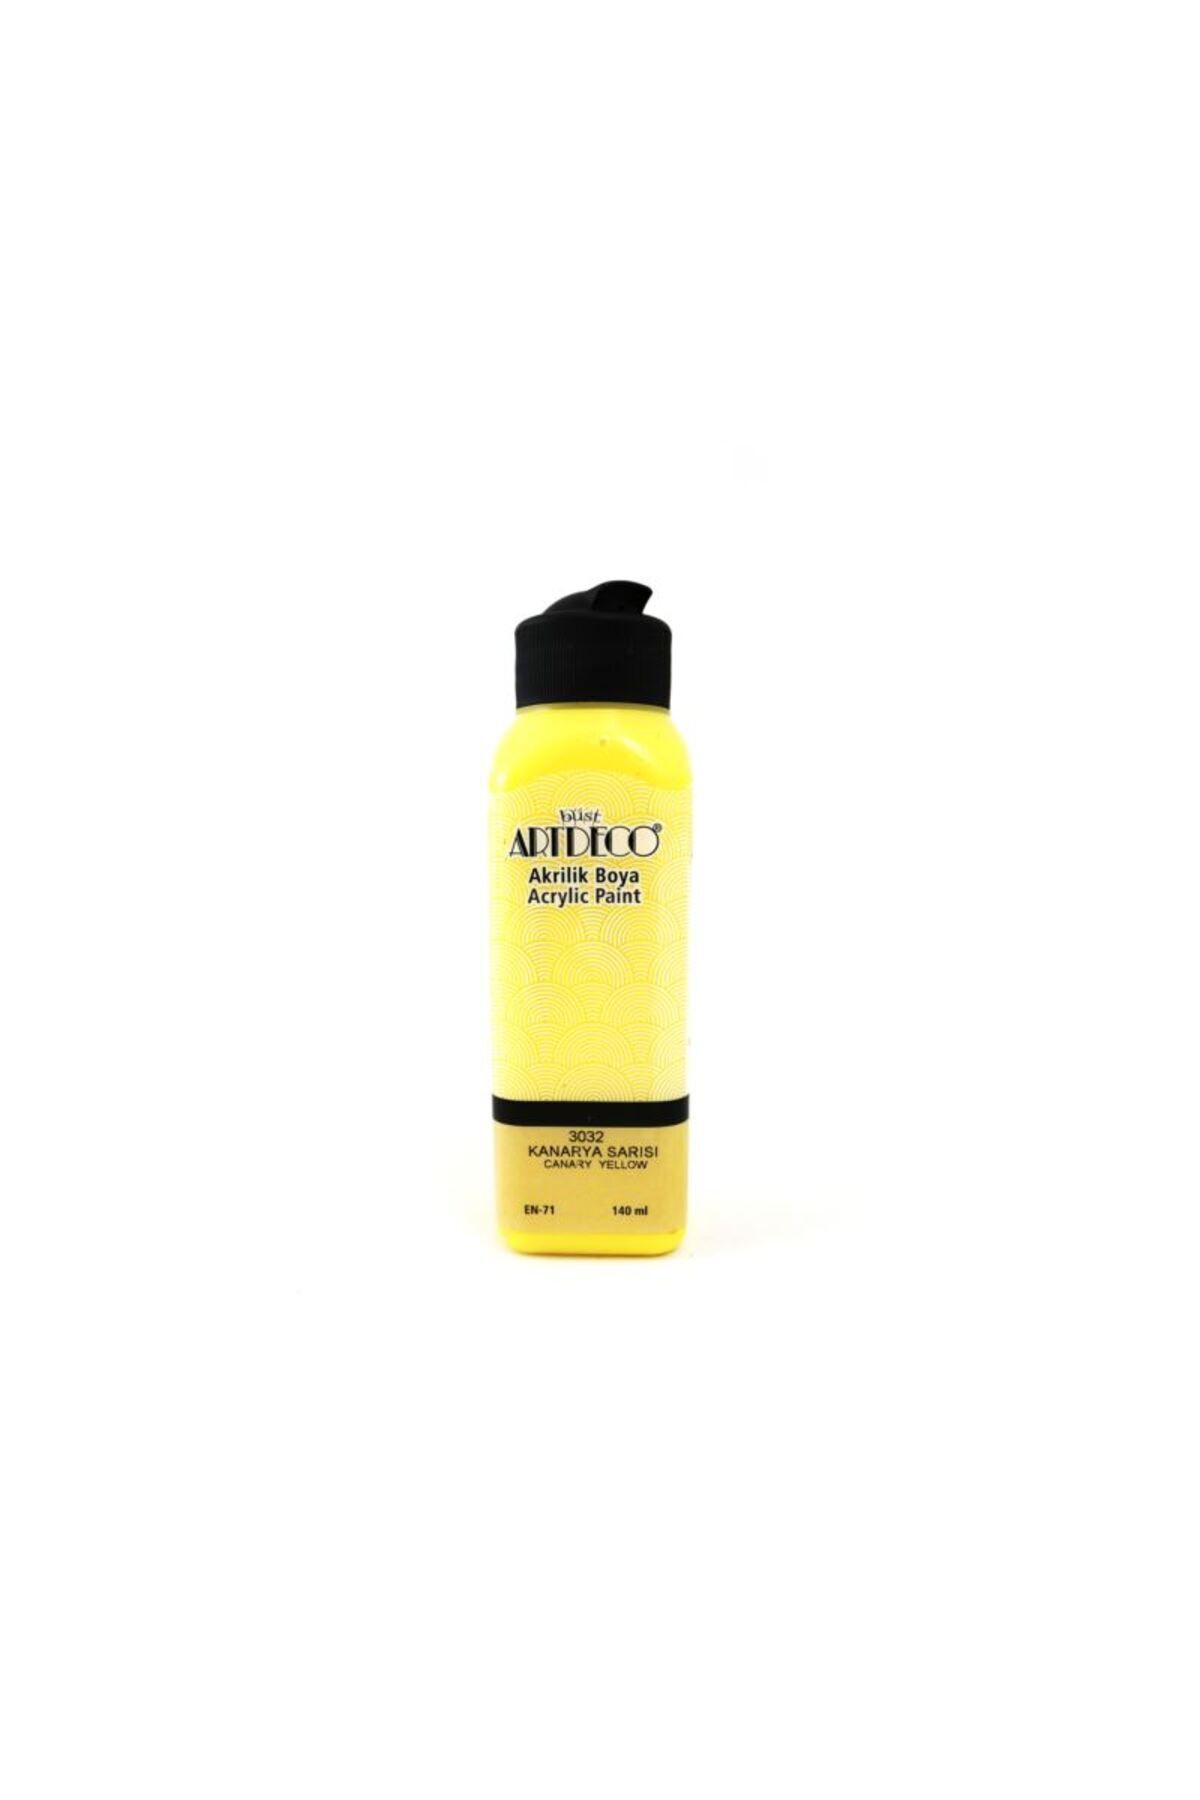 Artdeco Akrilik Boya 140 ml K.sarısı 070r-3032